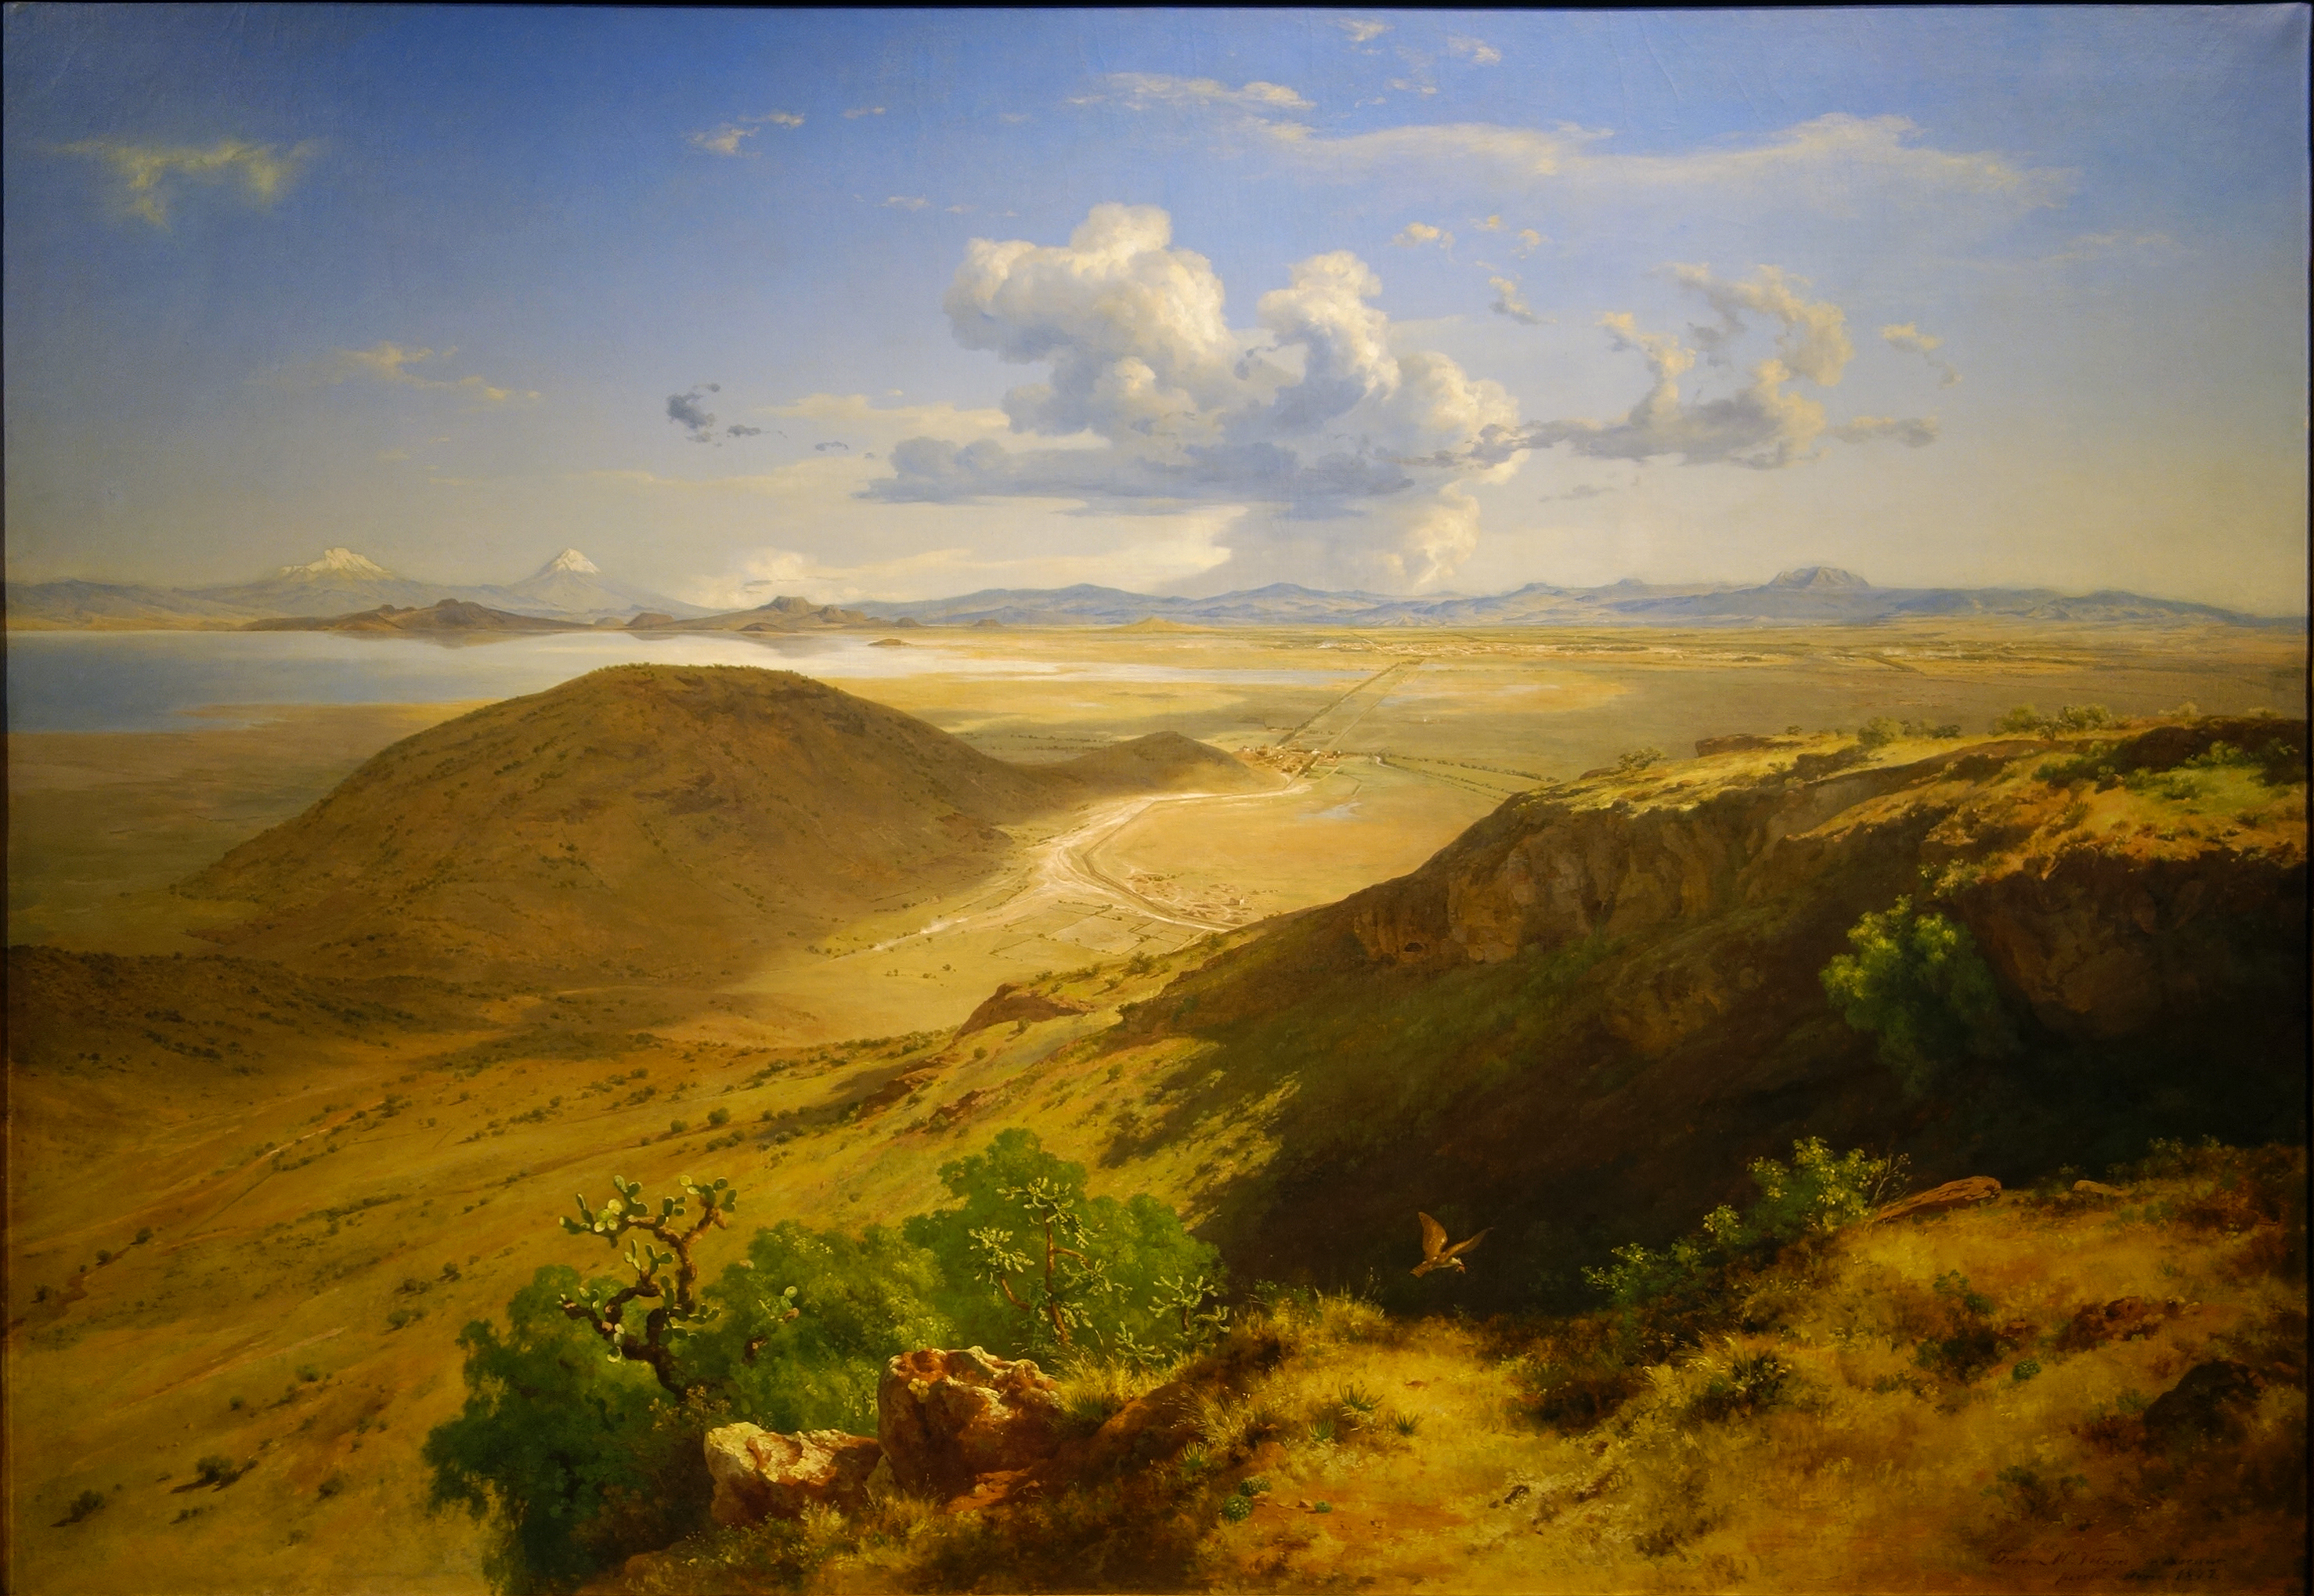 José María Velasco, The Valley of Mexico (Valle de México), 1877, oil on canvas, 160.5 x 229.7 cm (Museo Nacional de Arte, INBA, Mexico City)